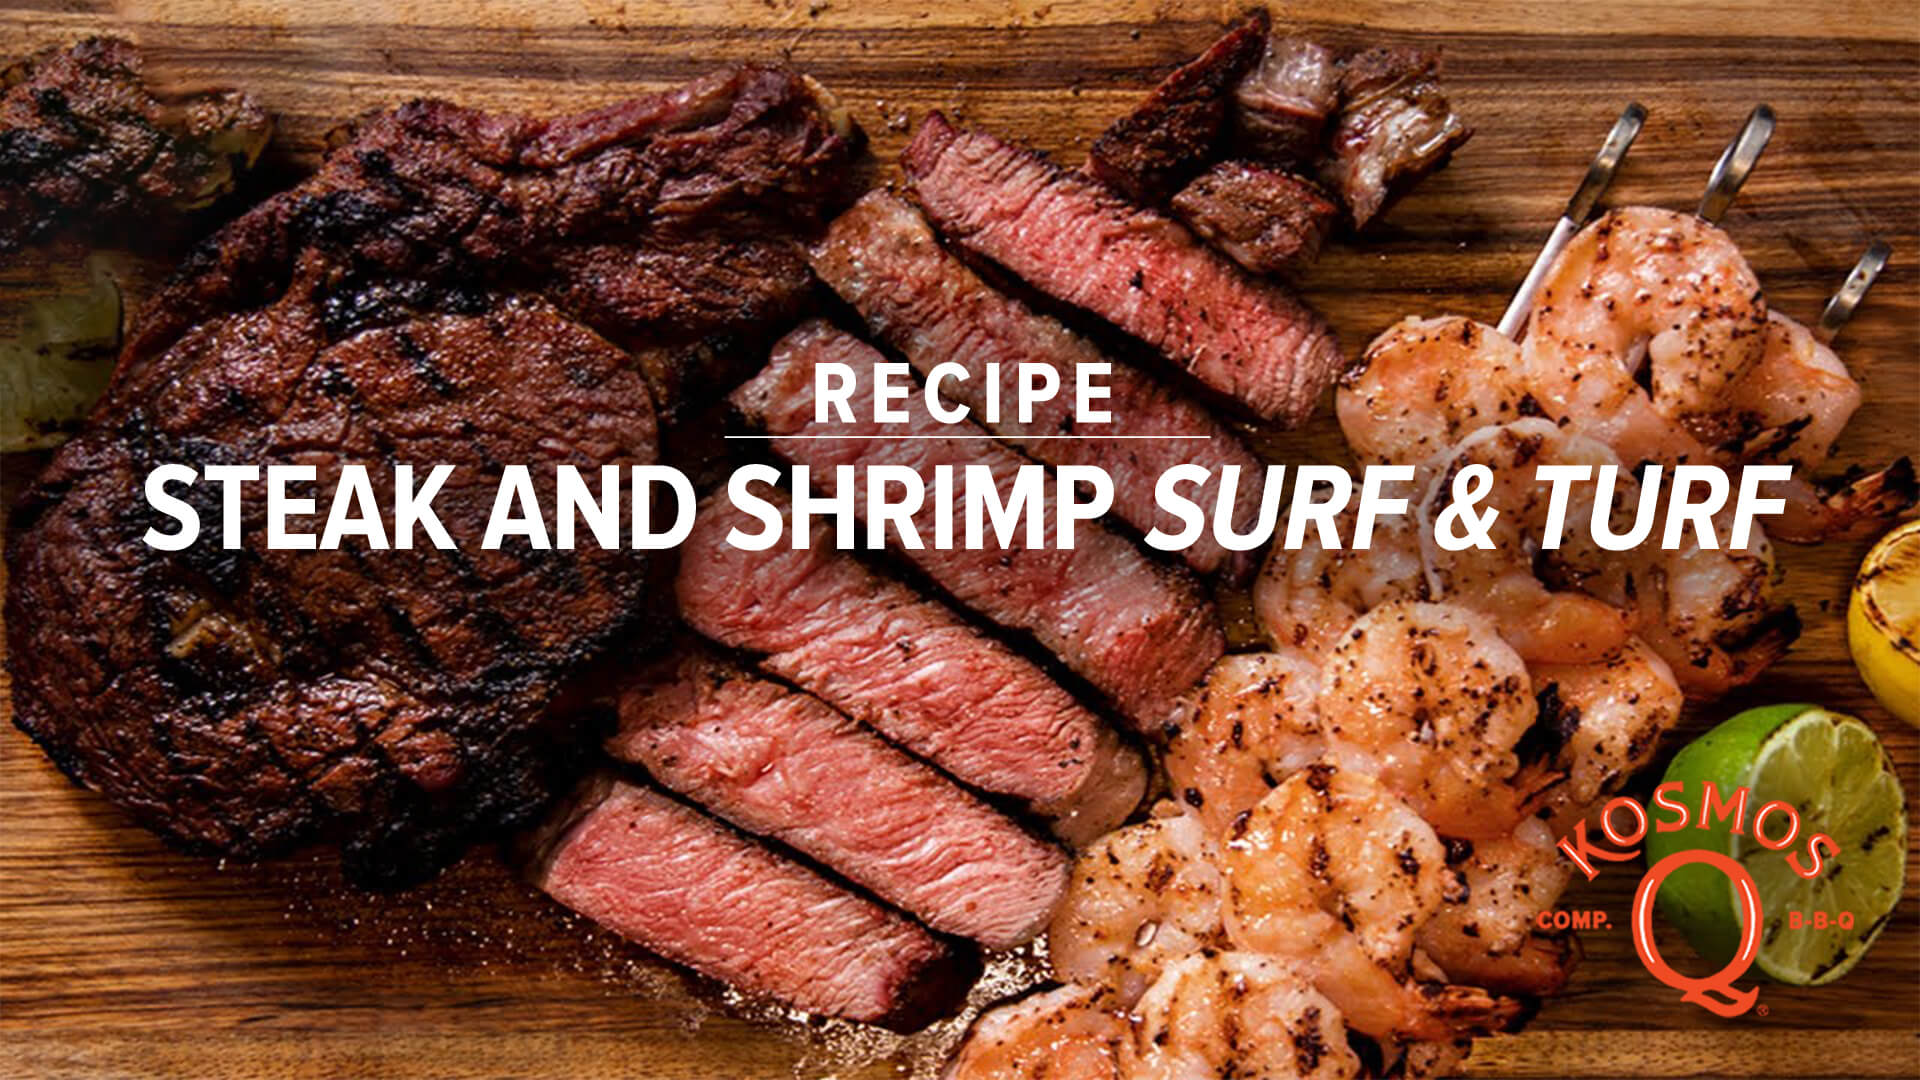 Steak and Shrimp - Oklahoma Surf & Turf!